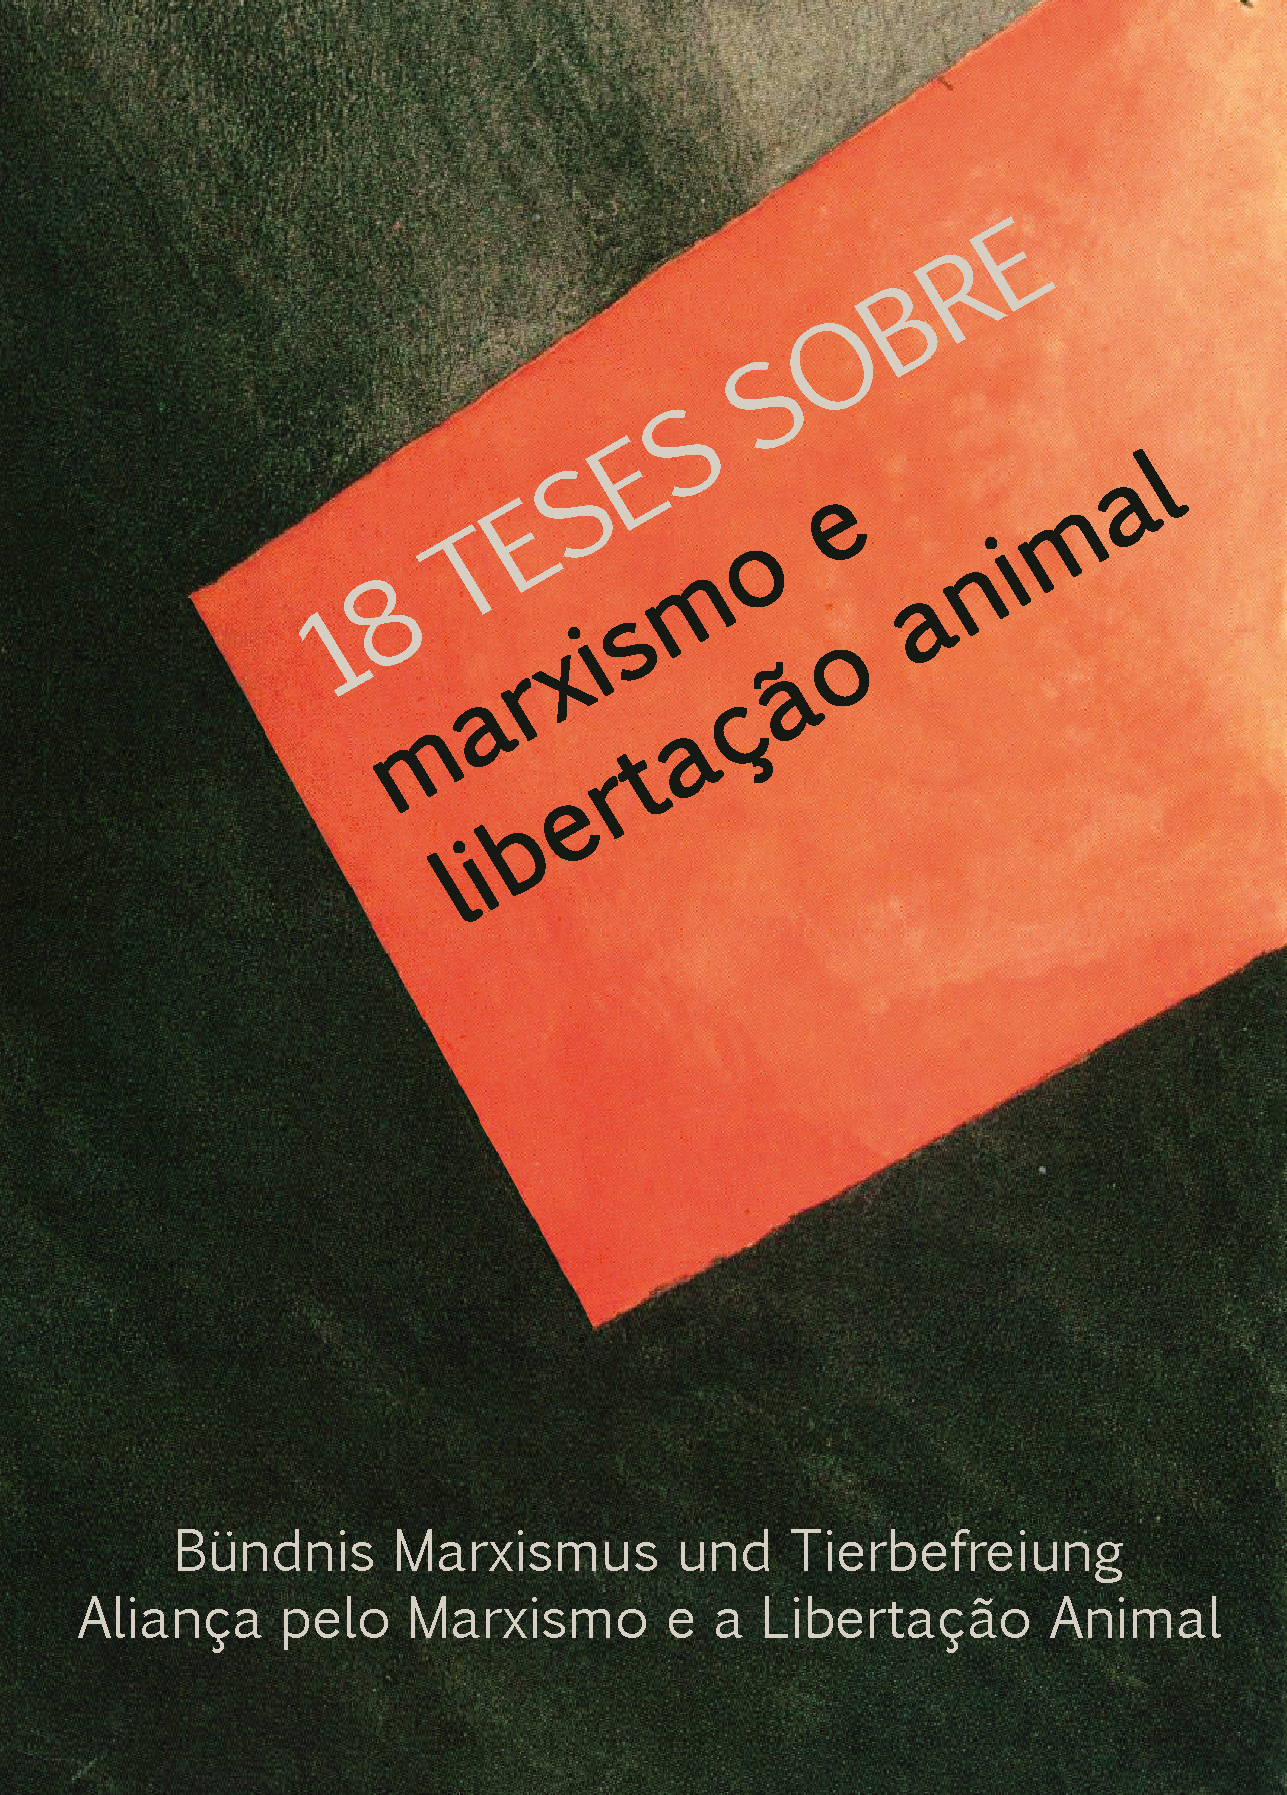 18 teses sobre Marxismo e libertação animal